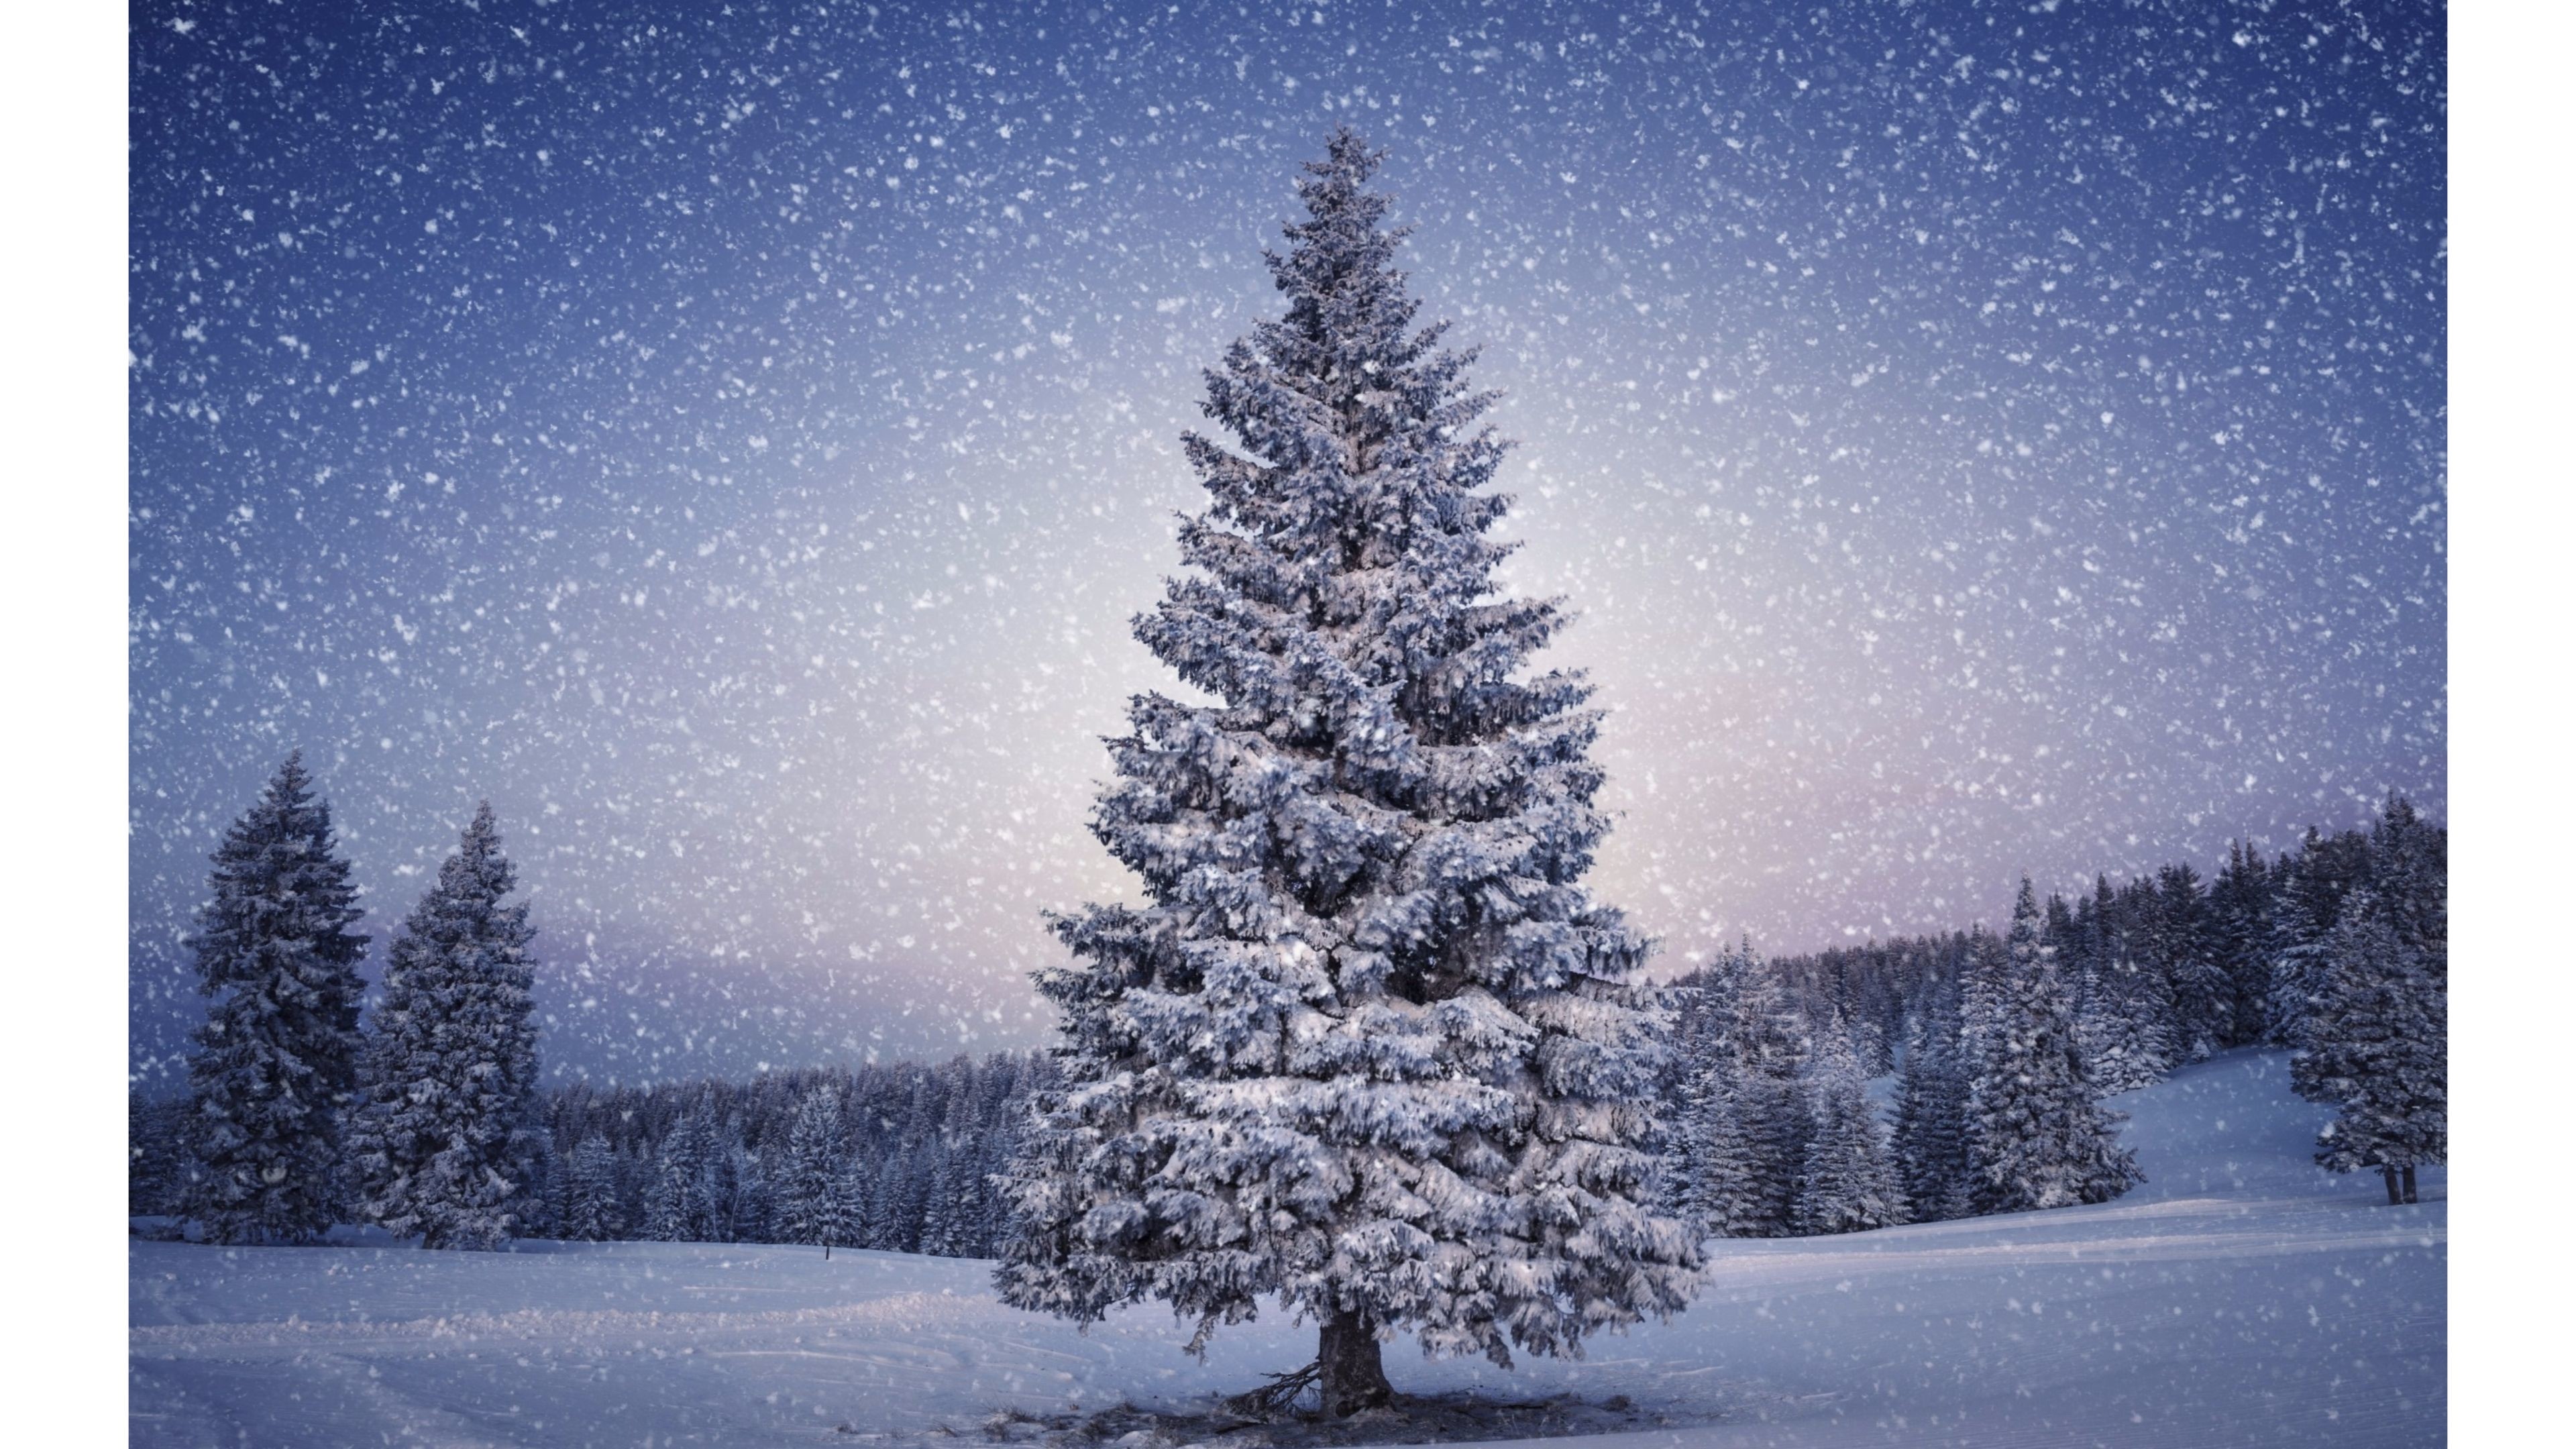 3840x2160, Snowy 2016 Merry Christmas 4k Wallpaper - Weihnachts Wallpaper 4k - HD Wallpaper 